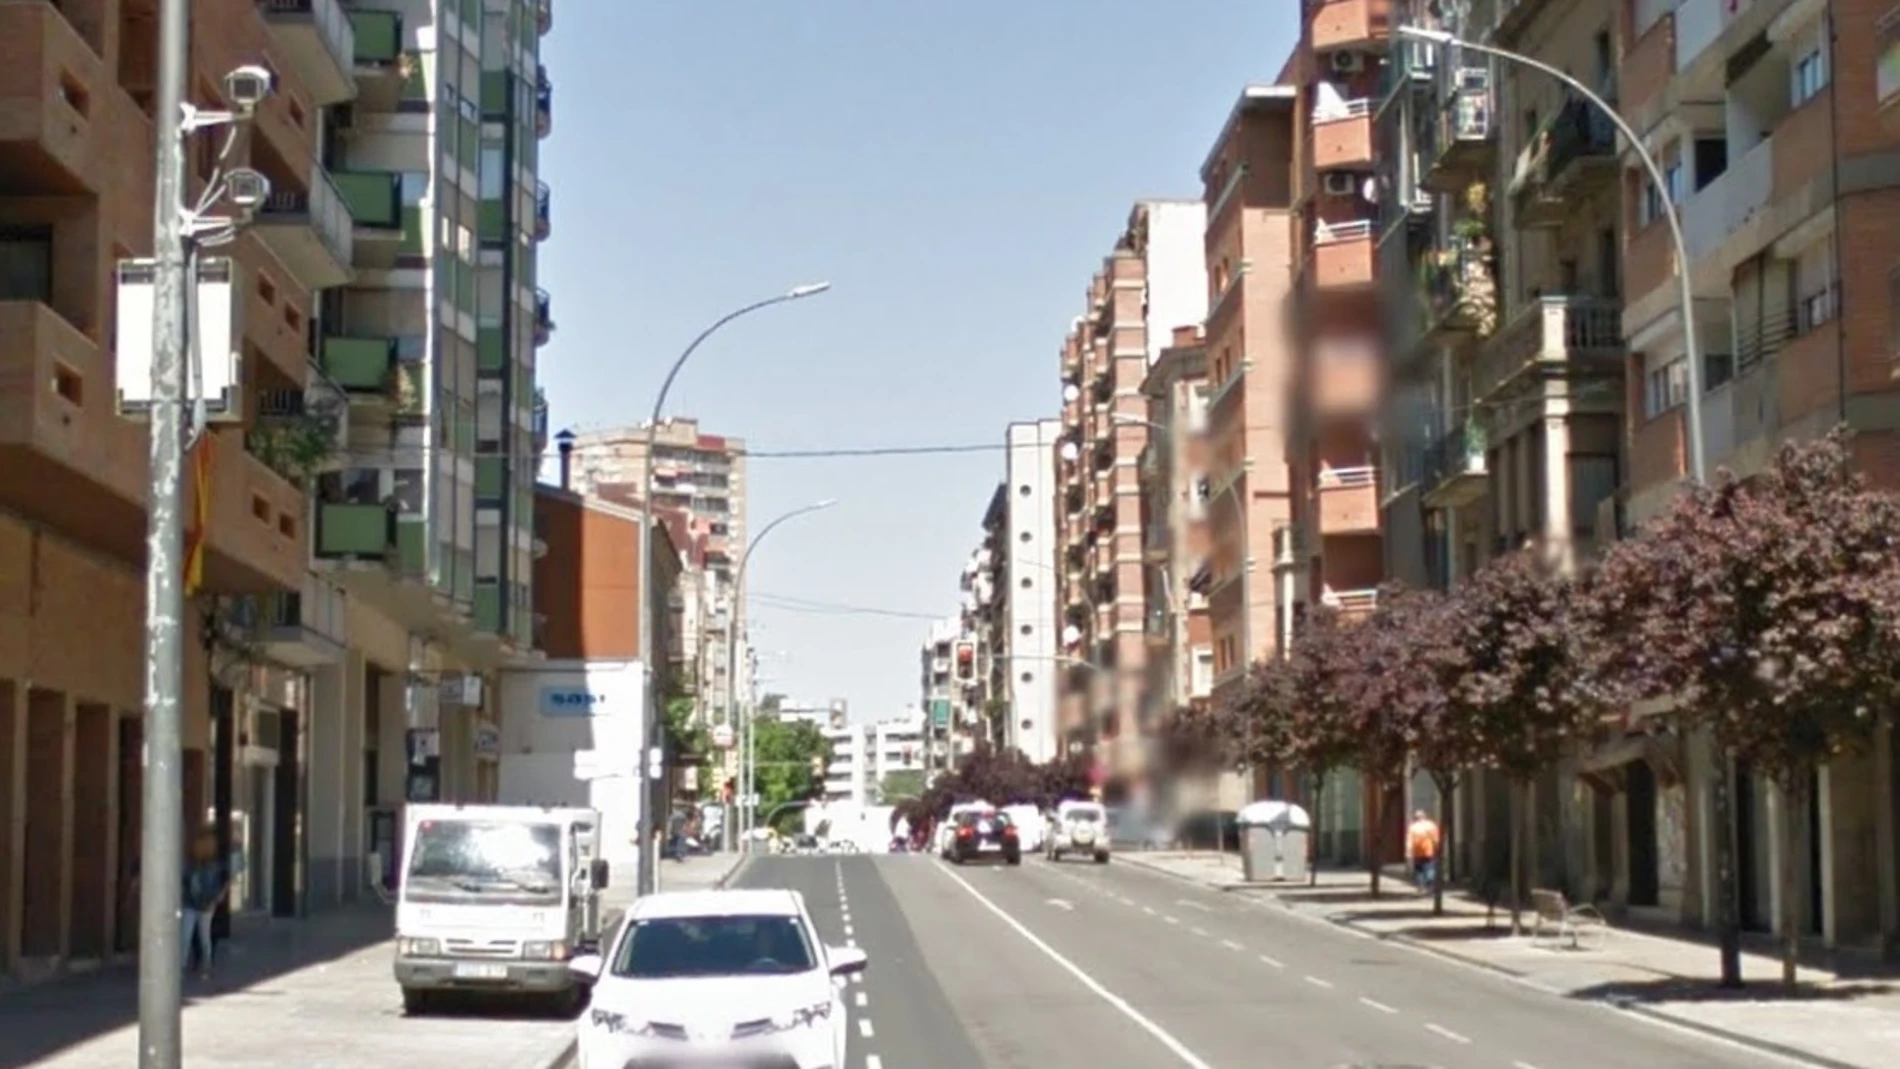 La calle en la que ocurrieron los hechos, en Lleida